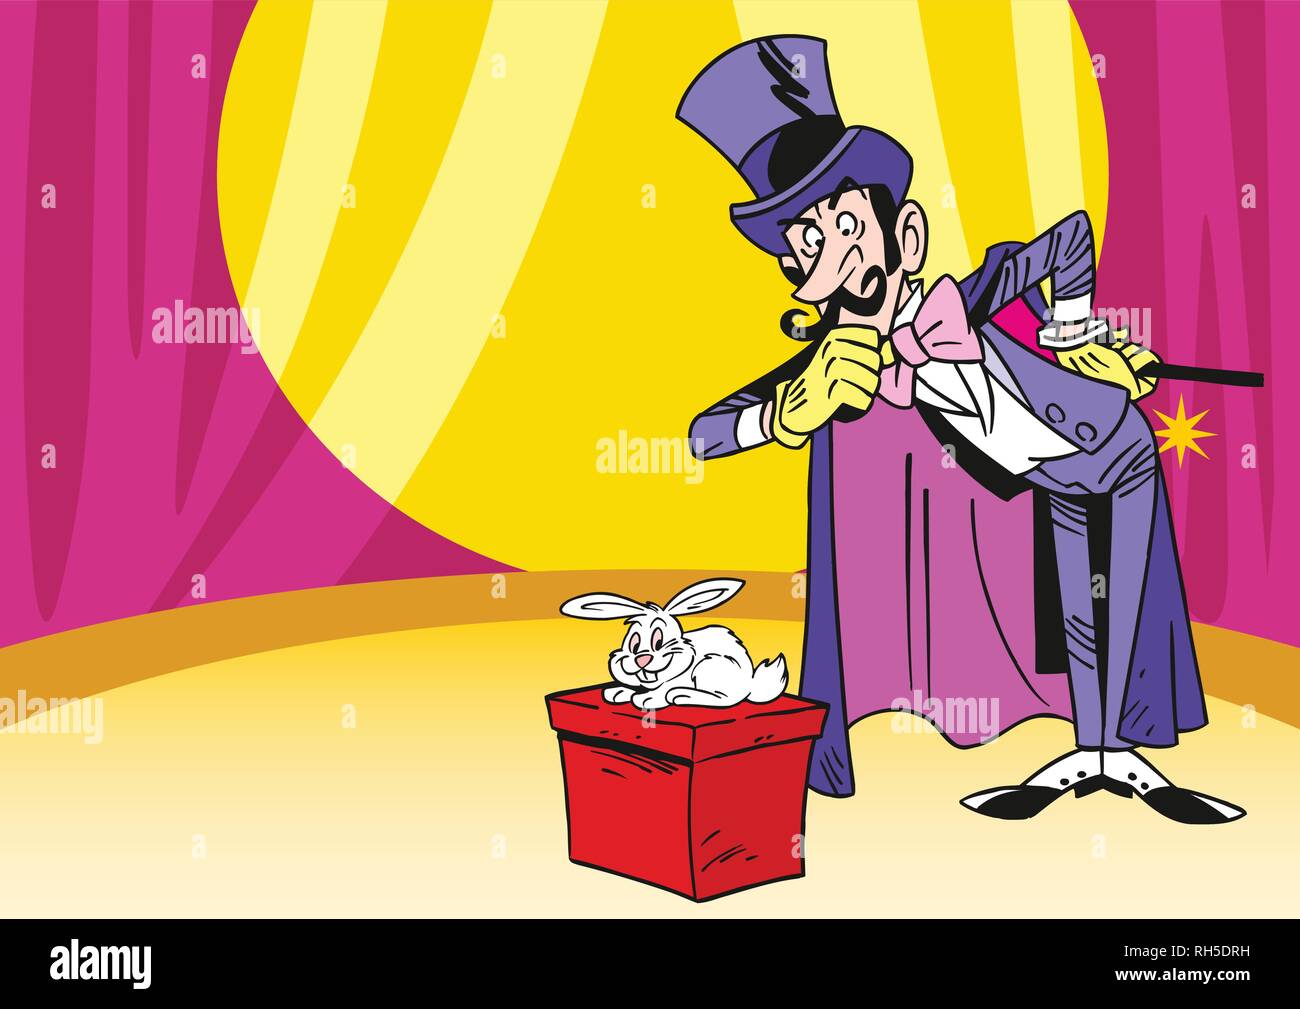 L'illustration montre un illusionniste, qui montre les trucs à base de lapin dans le cirque Illustration de Vecteur